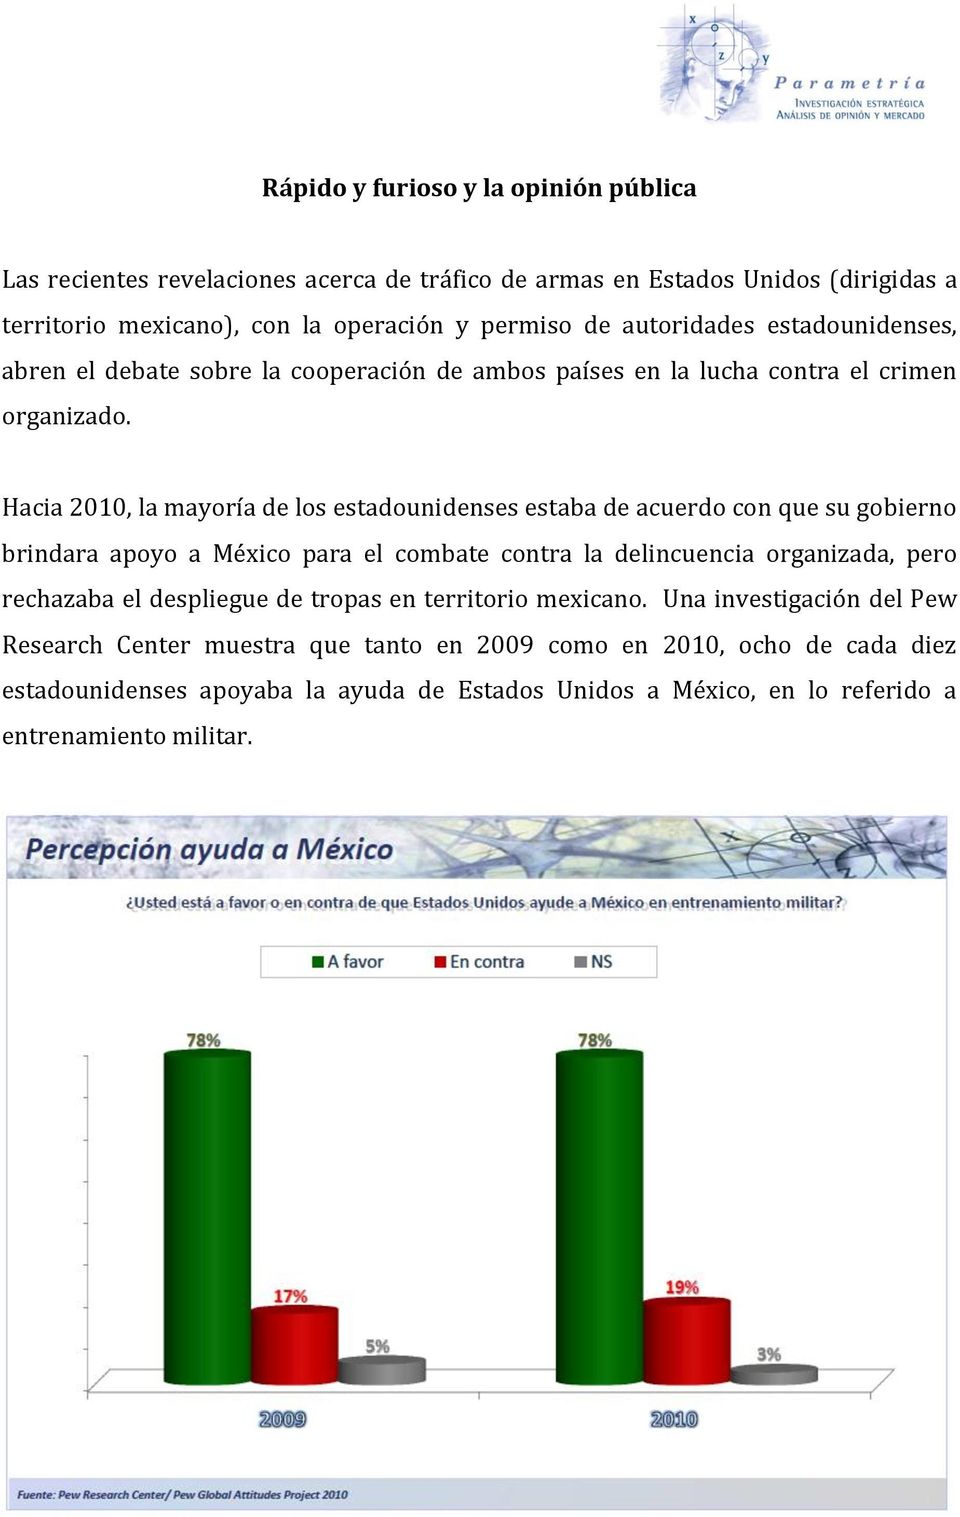 Hacia 2010, la mayoría de los estadounidenses estaba de acuerdo con que su gobierno brindara apoyo a México para el combate contra la delincuencia organizada, pero rechazaba el